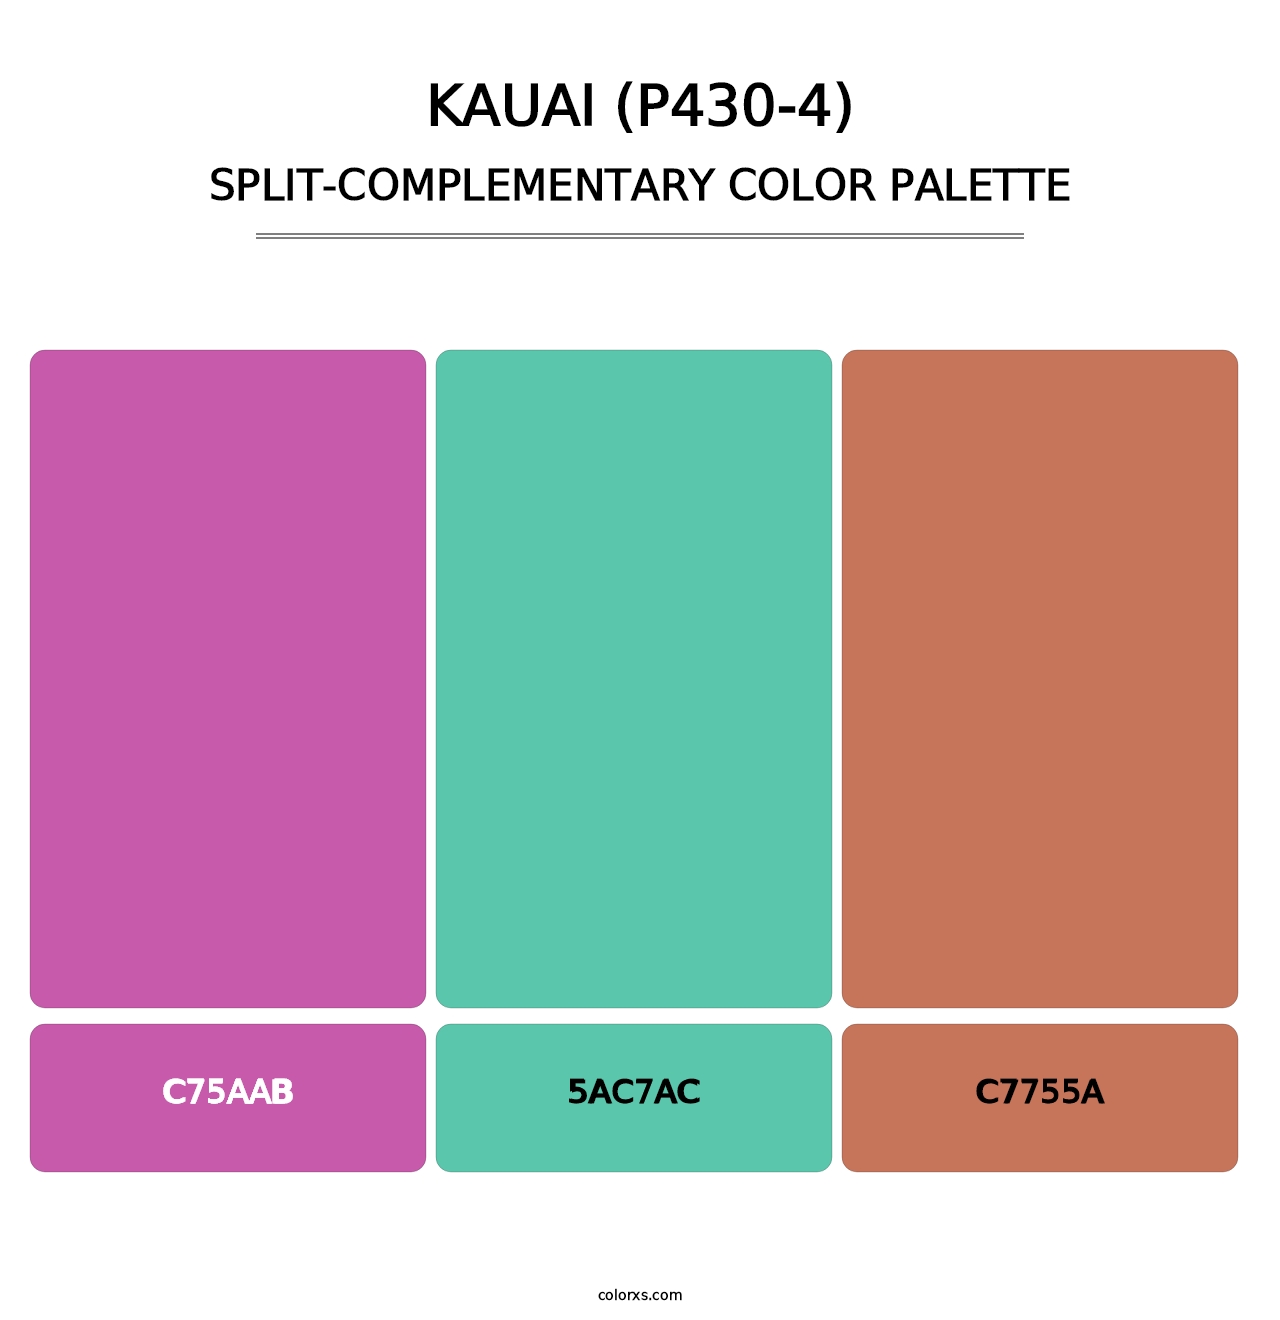 Kauai (P430-4) - Split-Complementary Color Palette